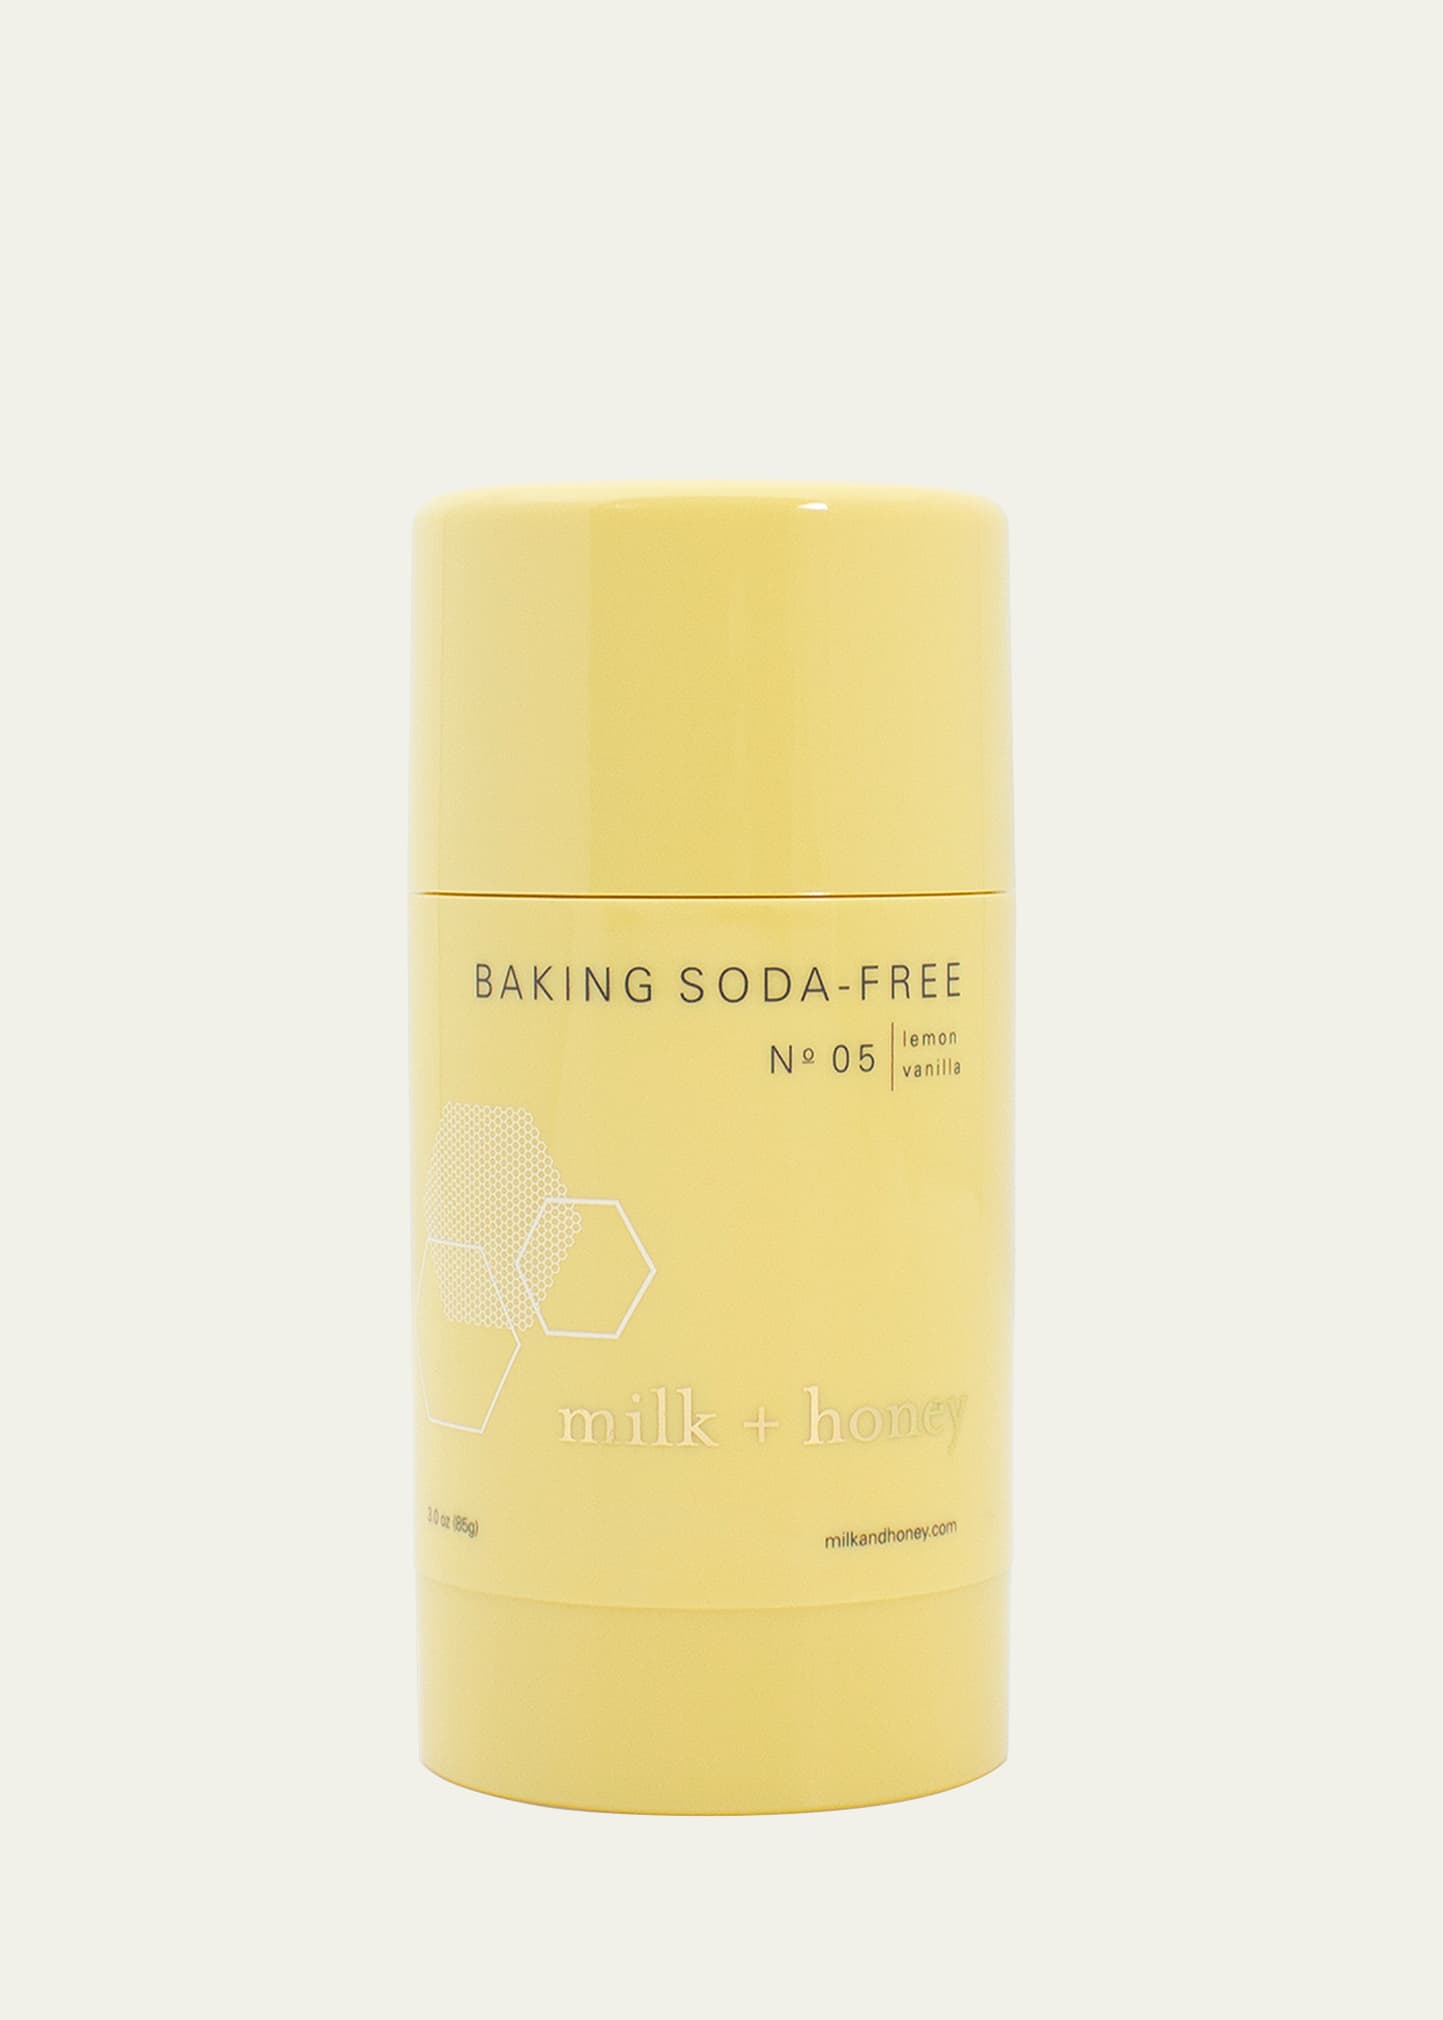 Baking Soda Free Deodorant No.05 (Lemon, Vanilla), 2.6 oz/75 g